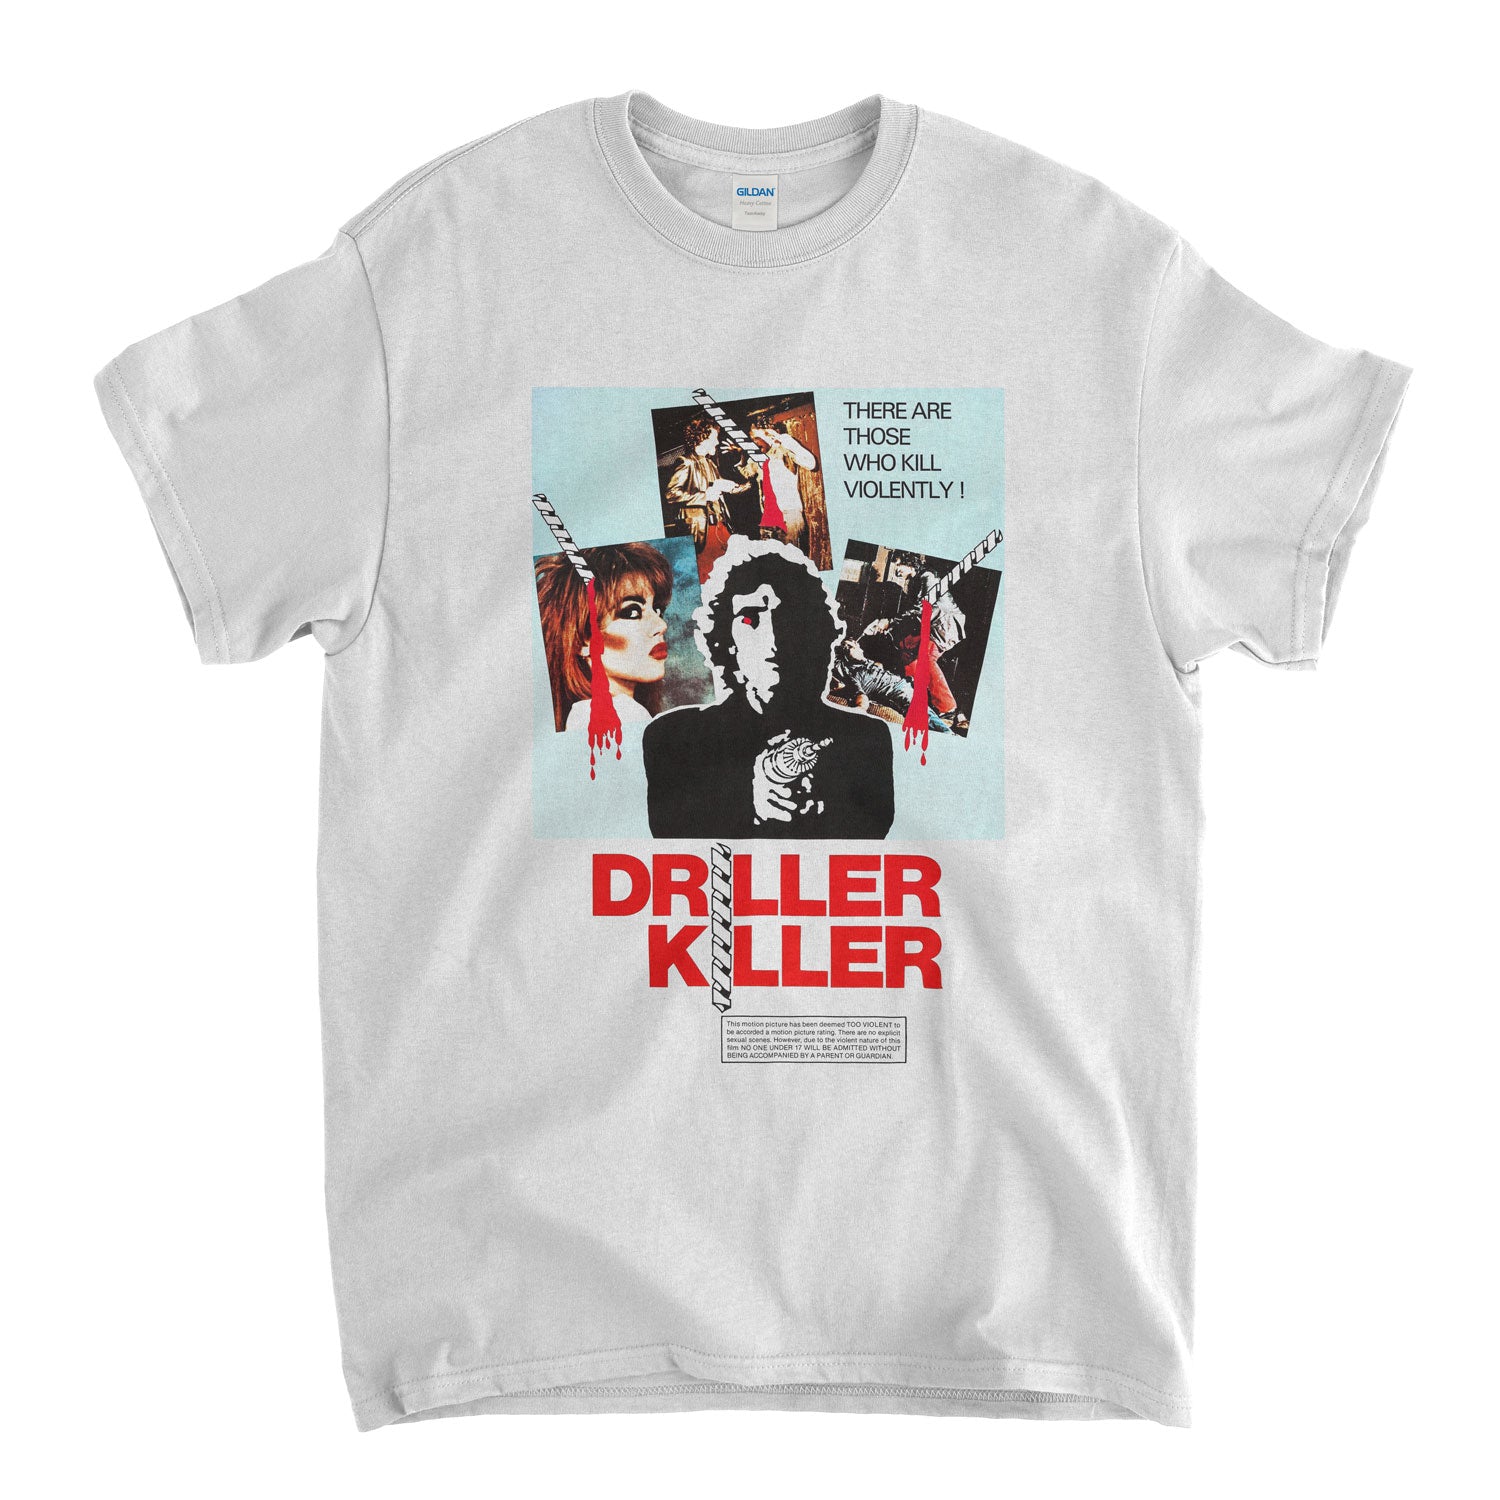 Driller Killer T Shirt - Classic Slasher Movie Poster Tee